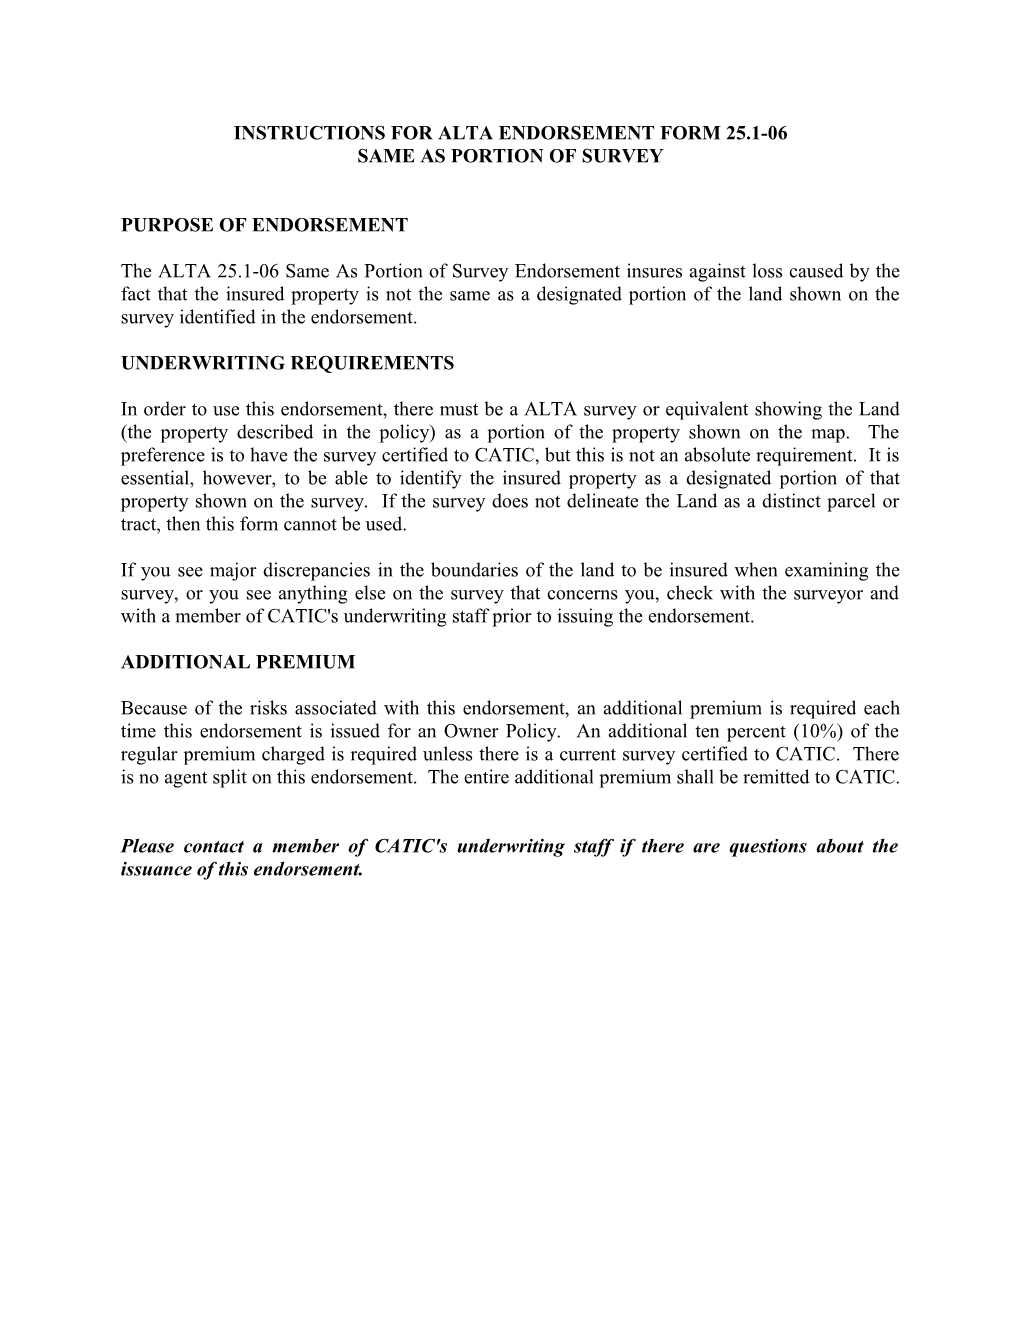 Instructions for Alta Endorsement Form 25.1-06